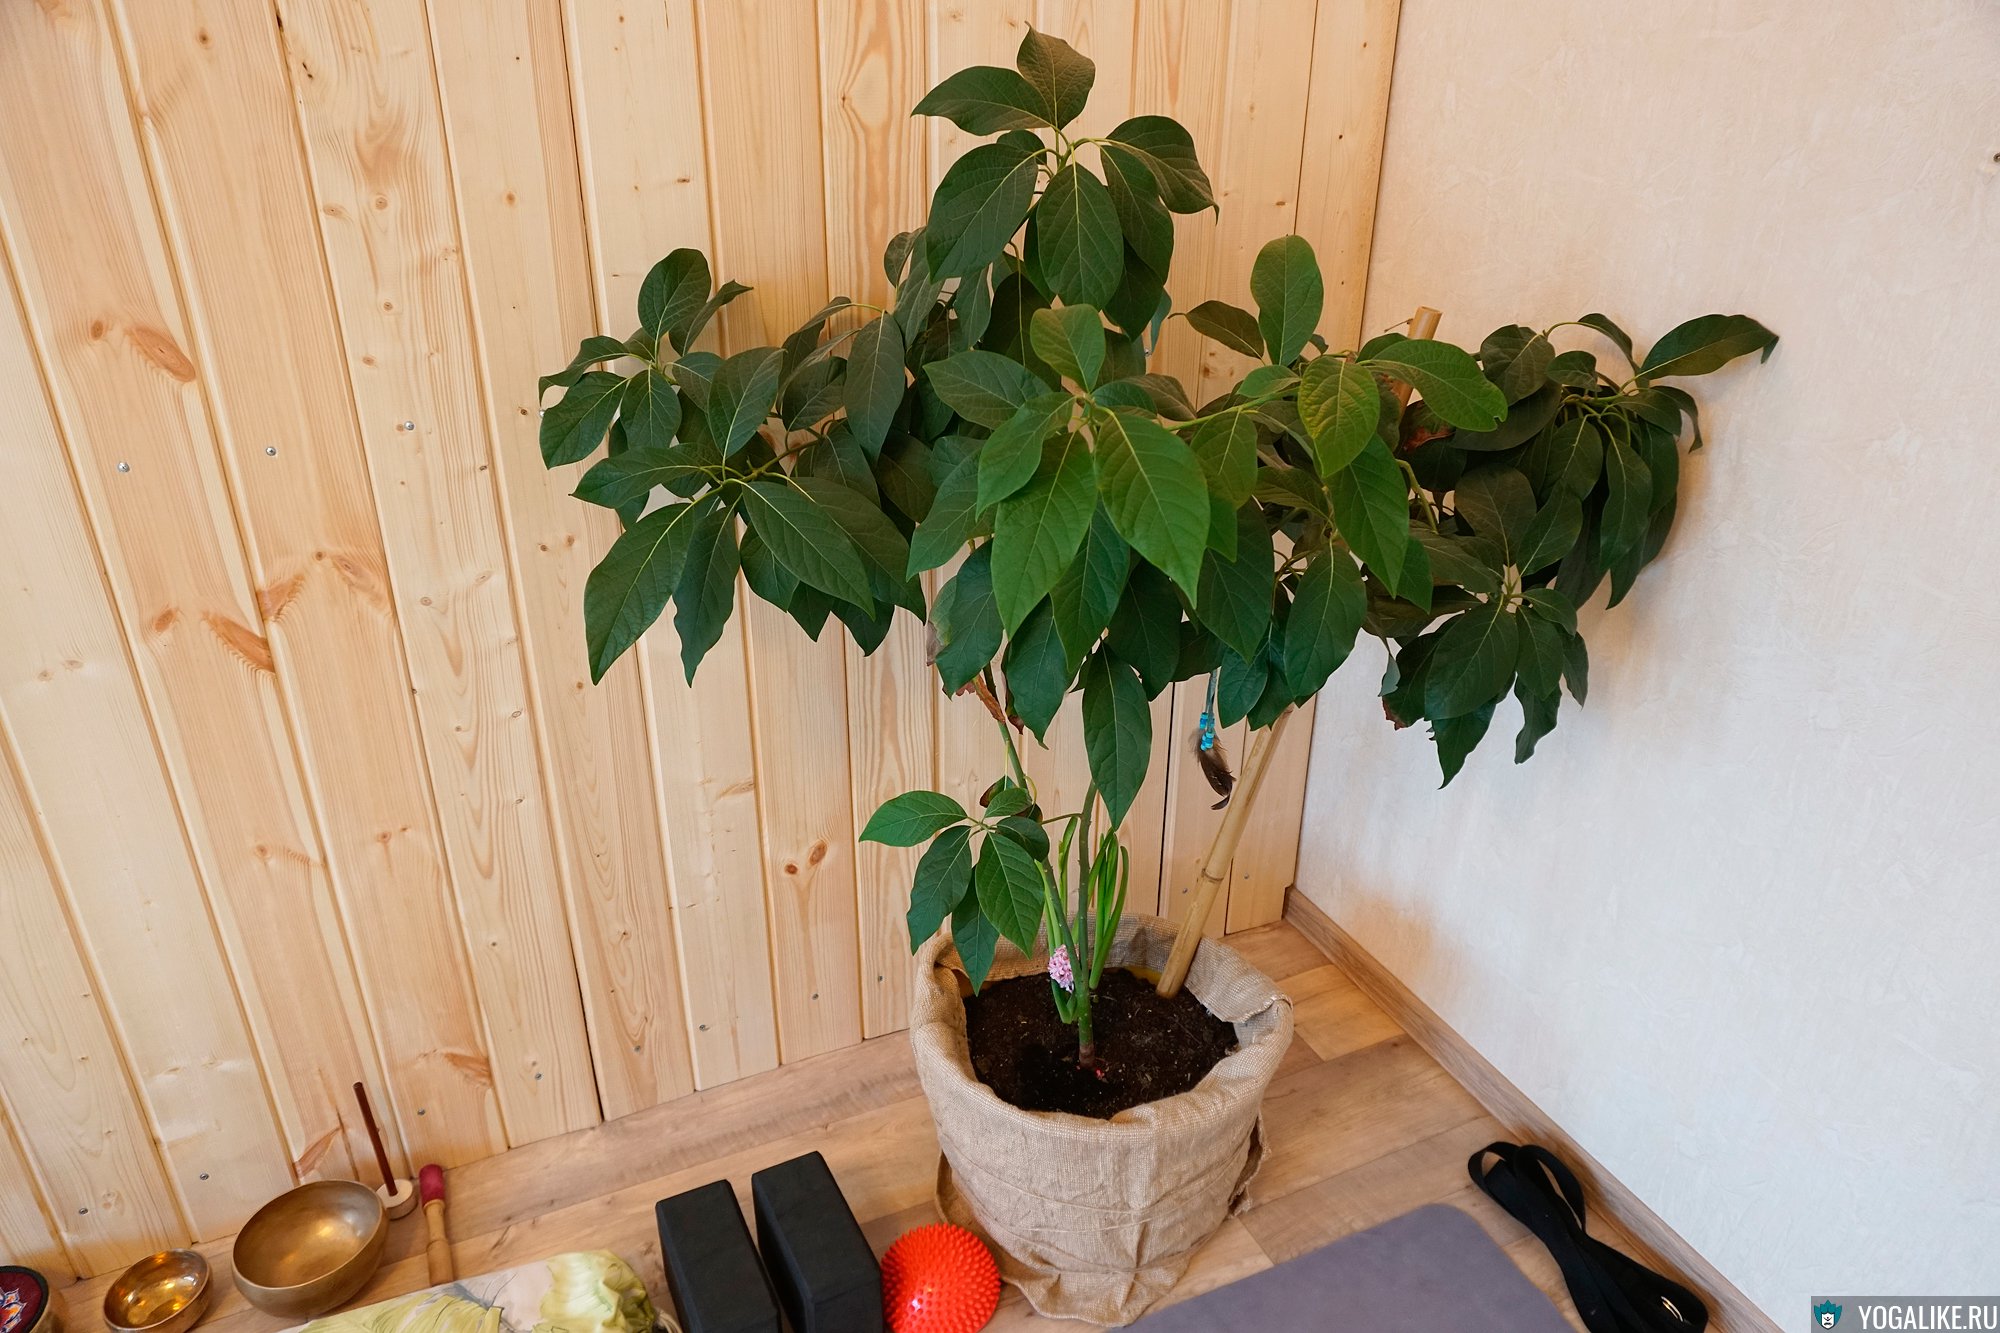 Фото авокадо выращенных в домашних условиях. Авокадо дерево. Авокадо в горшке. Авокадо растение дерево. Авокадо цветок.